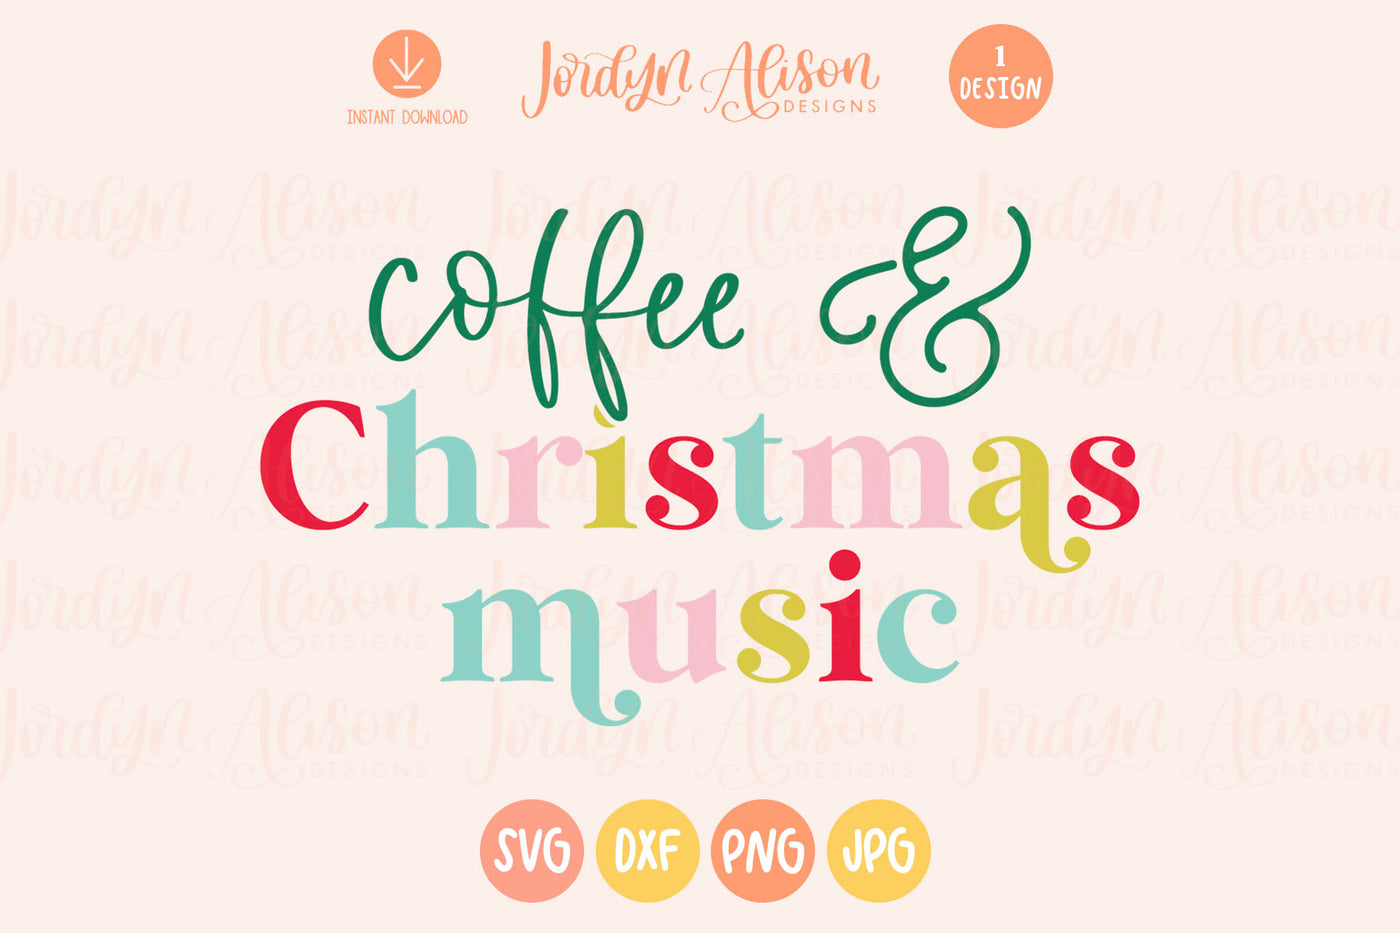 Coffee and Christmas Music SVG